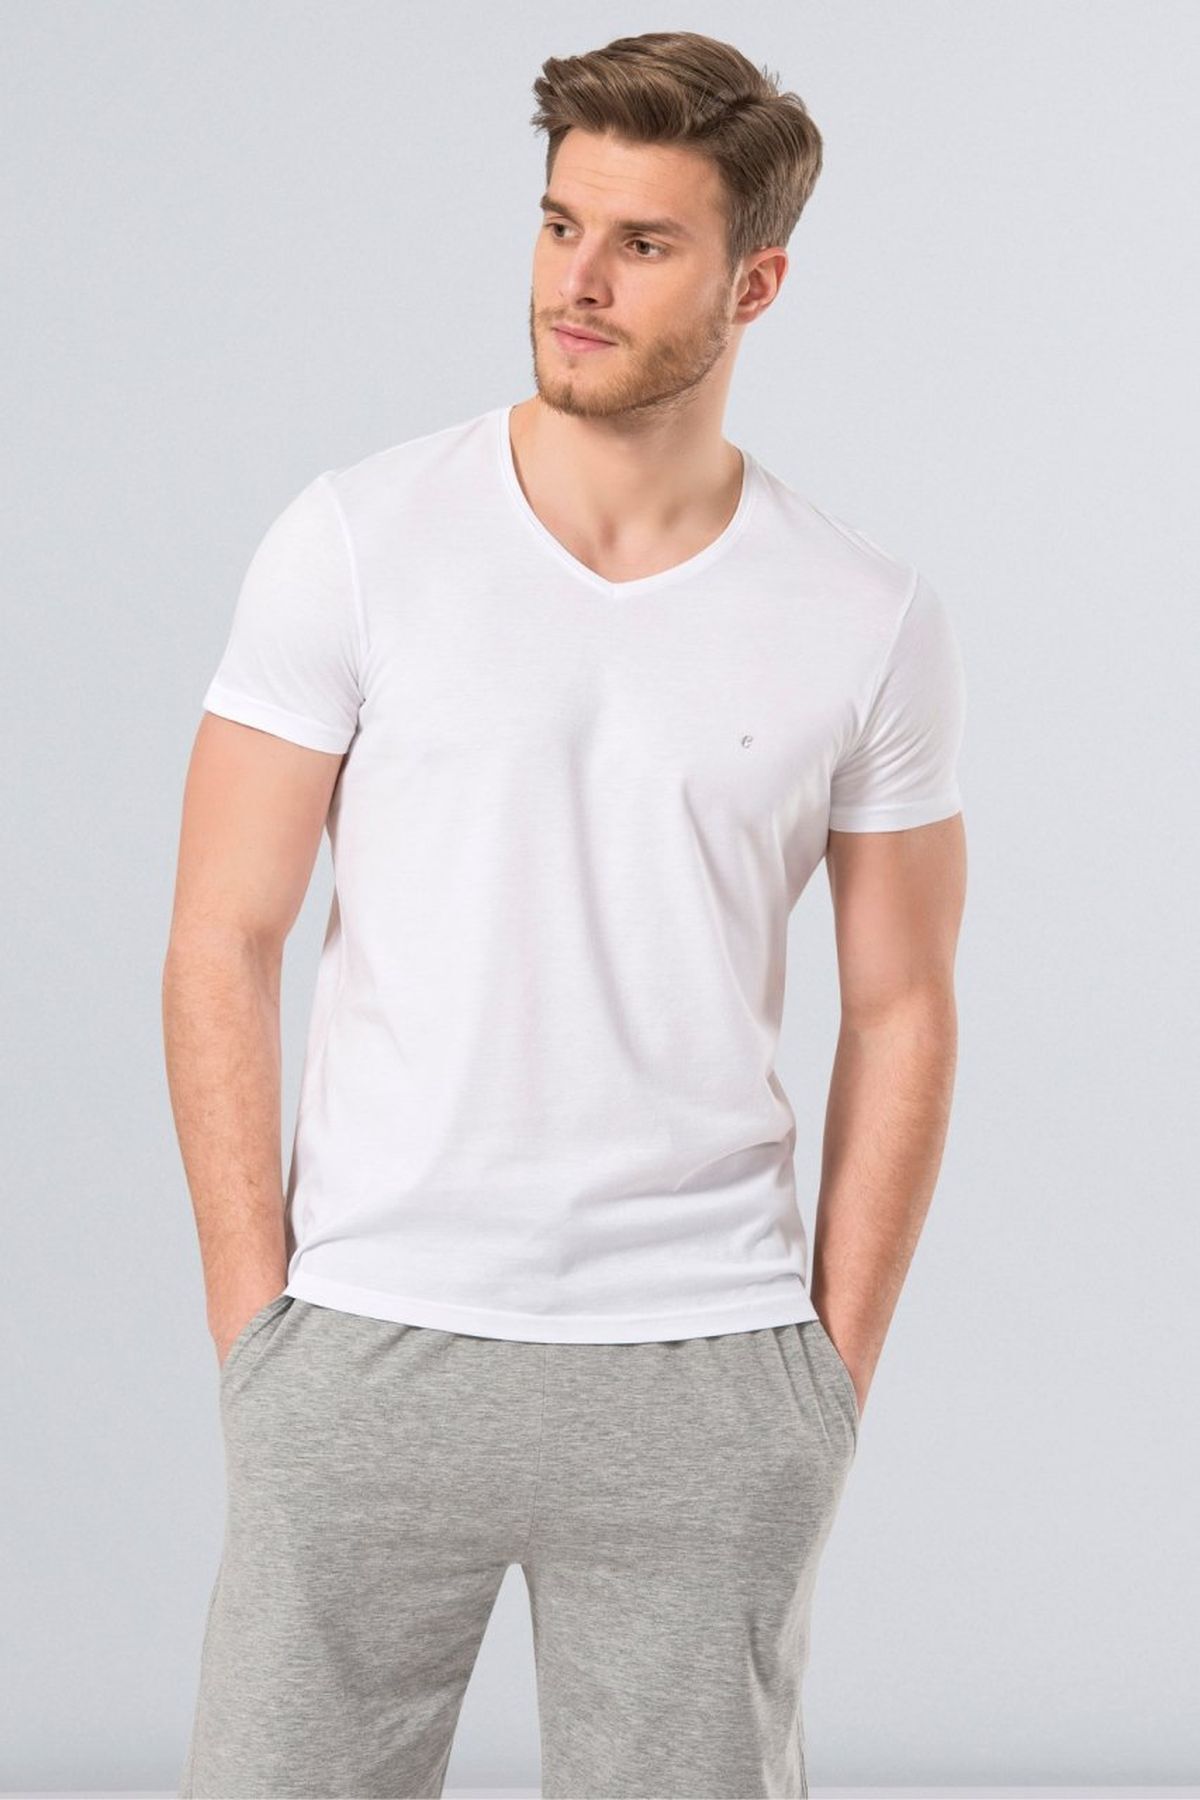 Cacharel 2170 Beyaz Erkek Modal V Yaka Slim Fit T-shirt